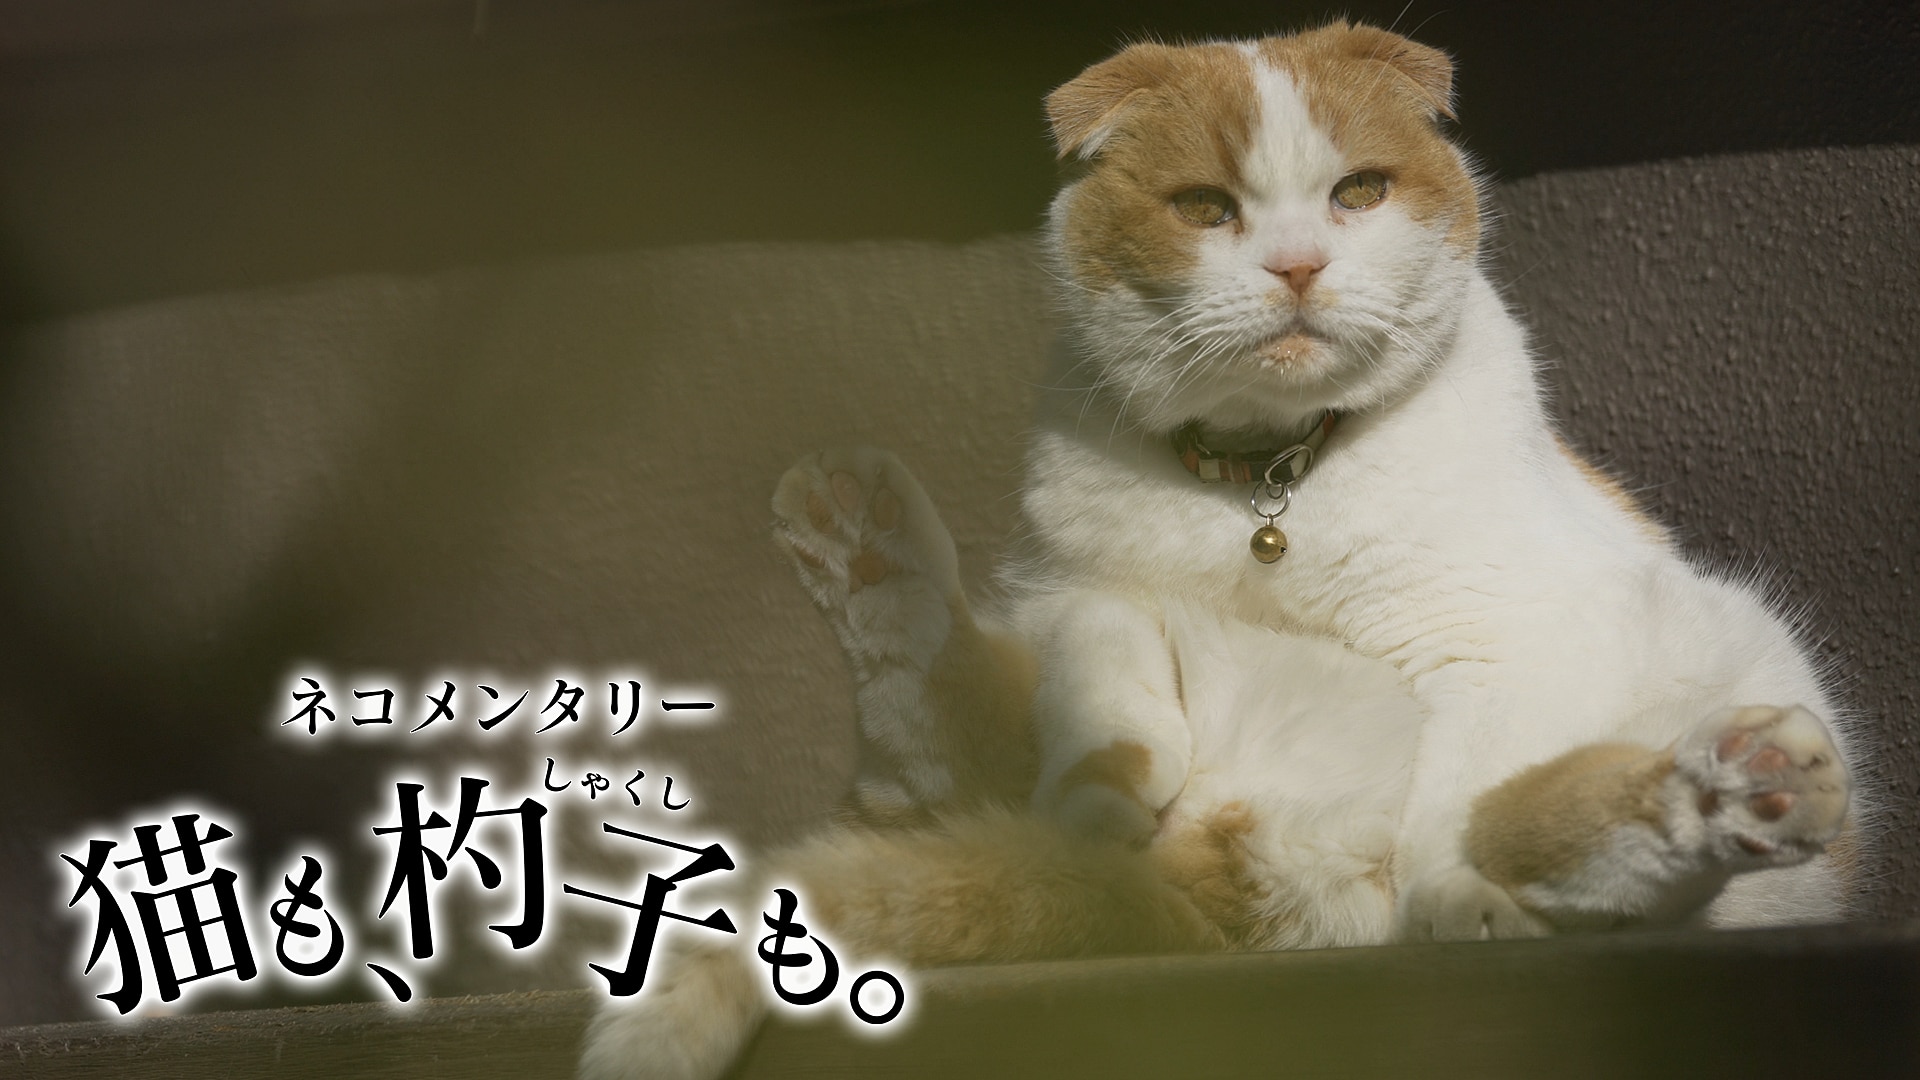 ネコメンタリー 猫も、杓子(しゃくし)も。 - NHK